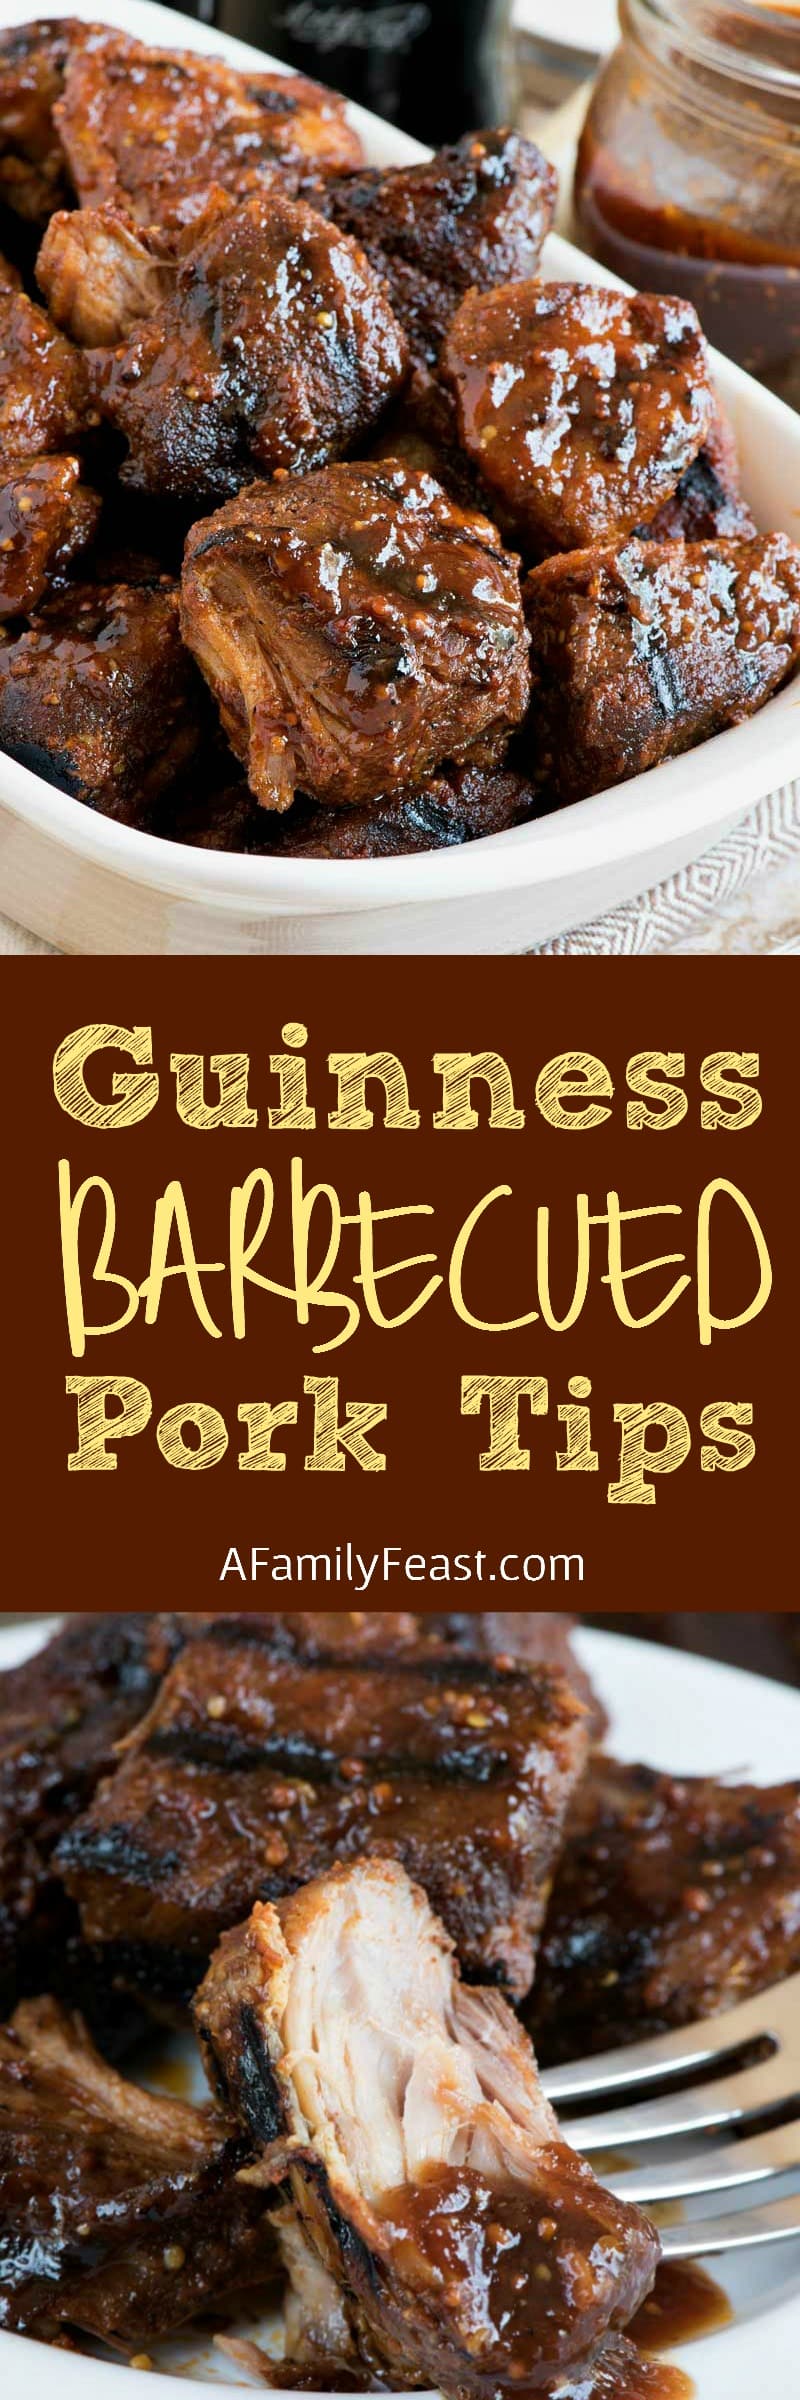 Guinness Barbecued Pork Tips - Tender slow-cooked pork tips glazed with Guinness barbecue sauce and grilled until caramelized. 